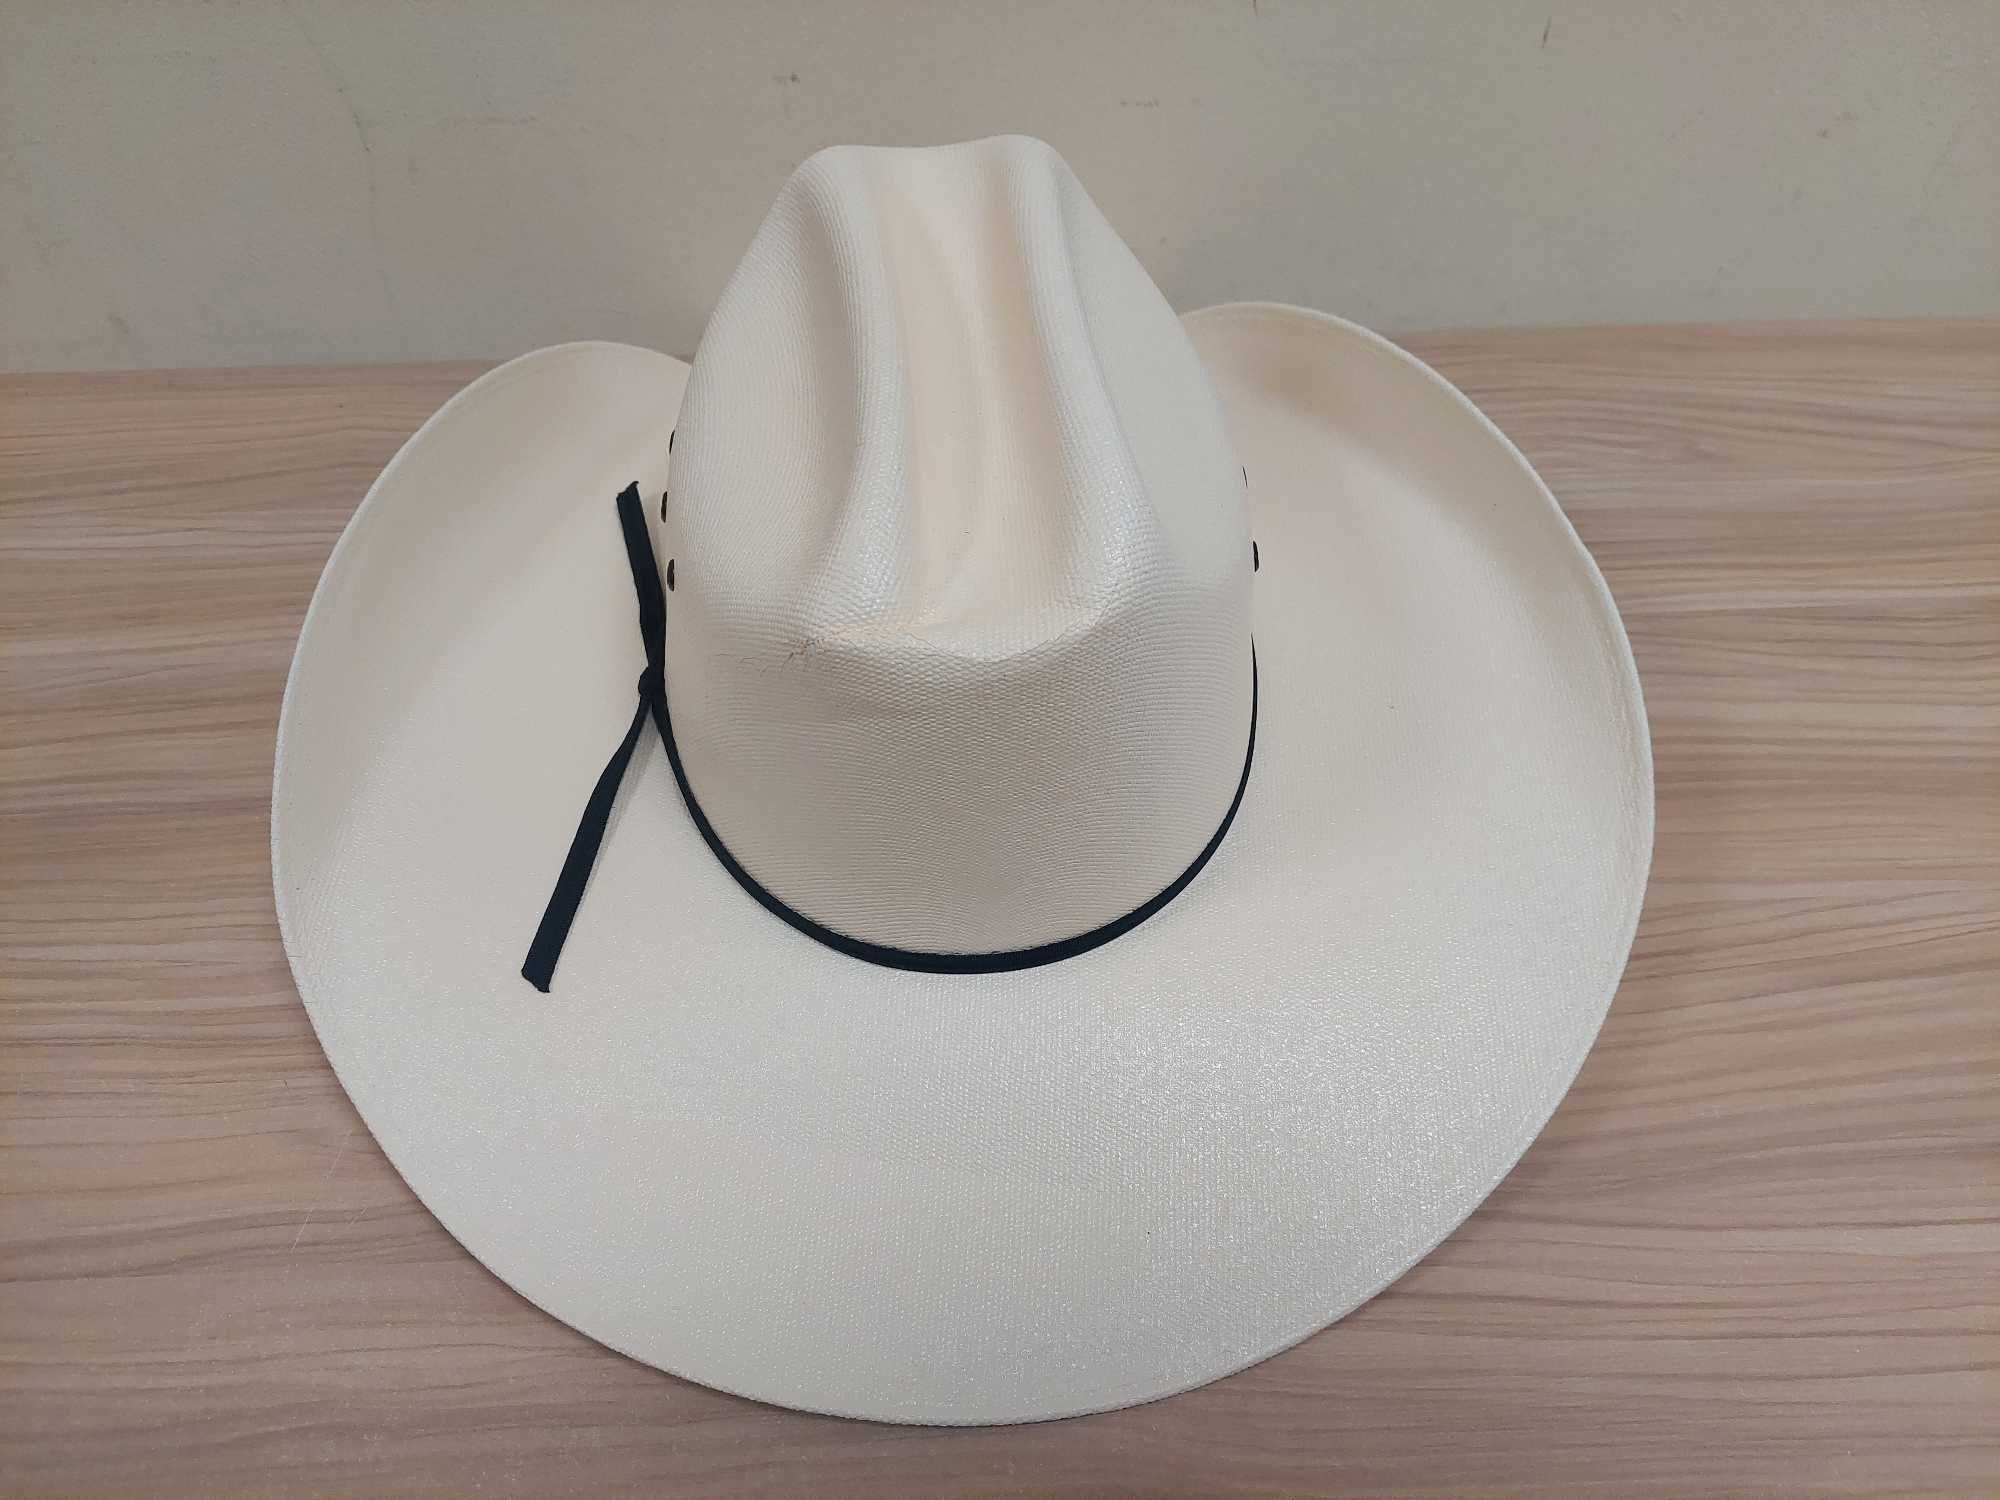 Lone Star Hats Western Straw kapelusz kowbojski kapelusz 57cm A